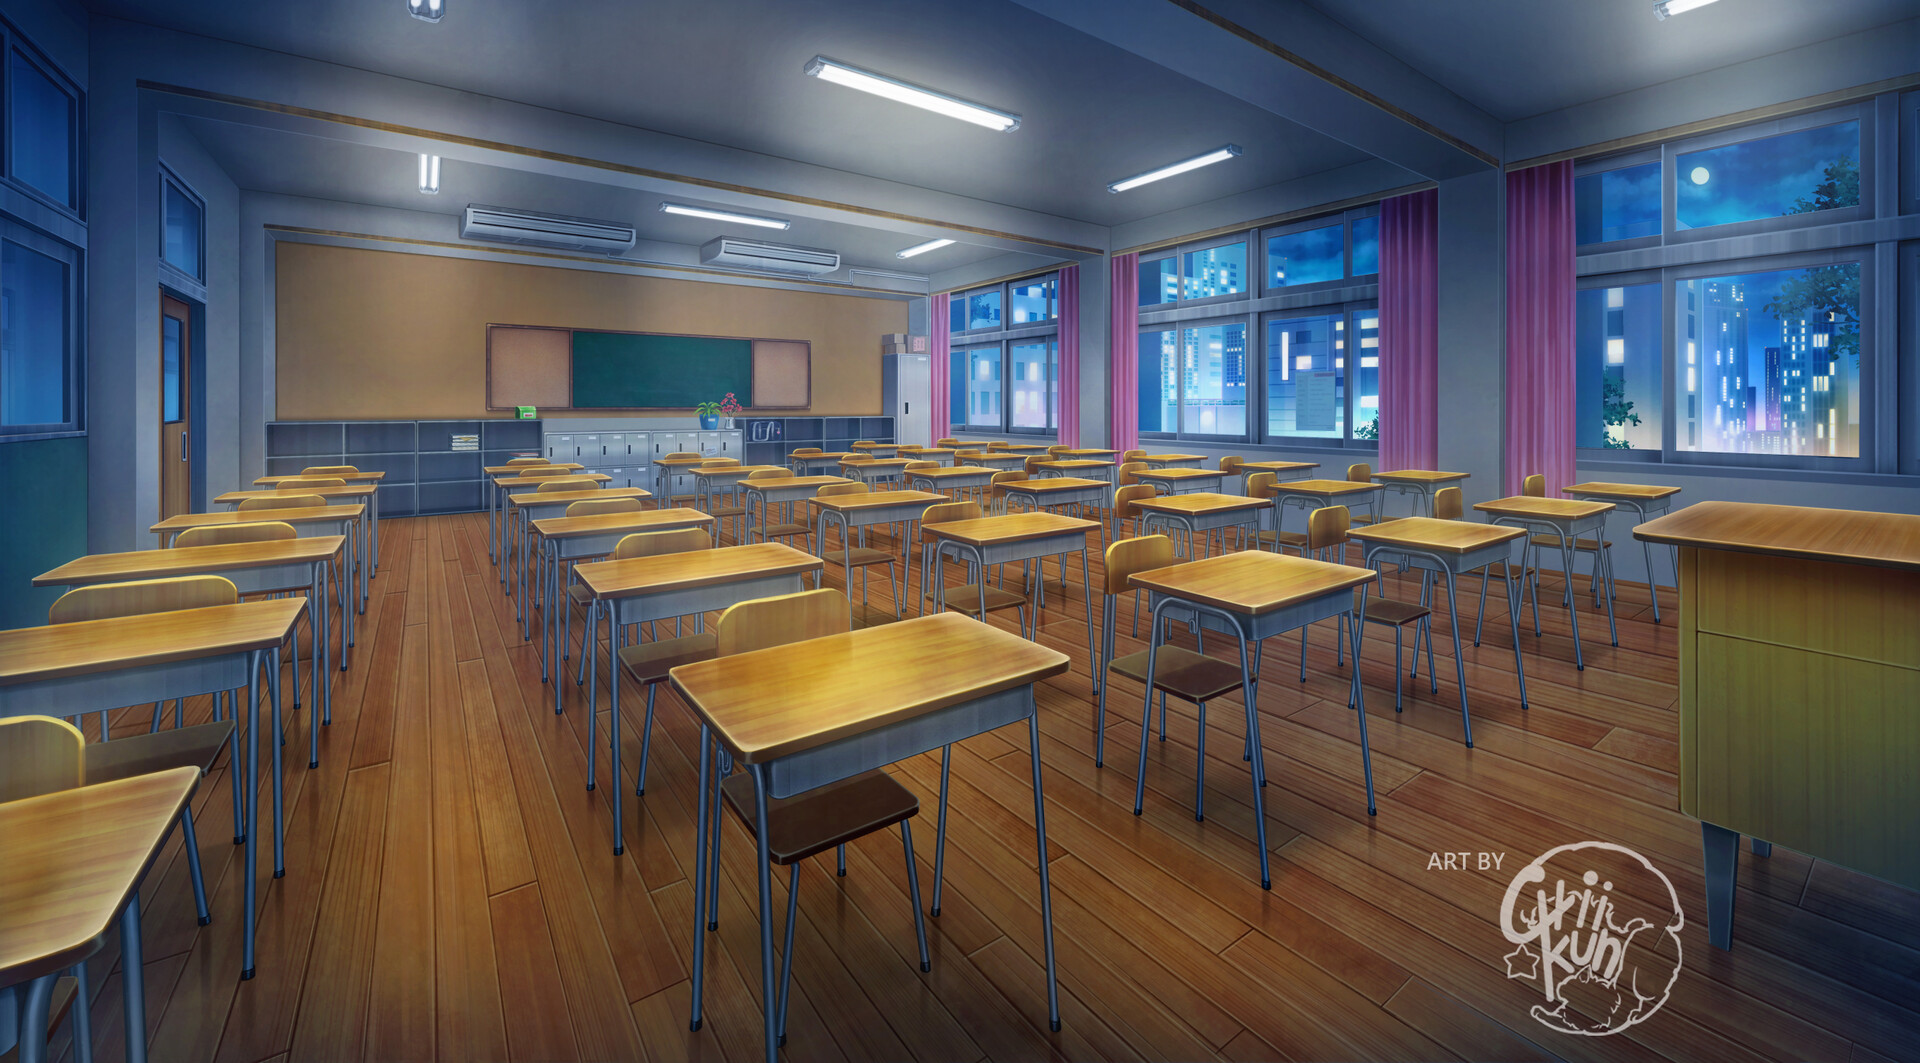 Wallpaper Anime Inside The School, Classrooms, Windows, Sunlight -  Resolution:1920x1080 - Wallpx